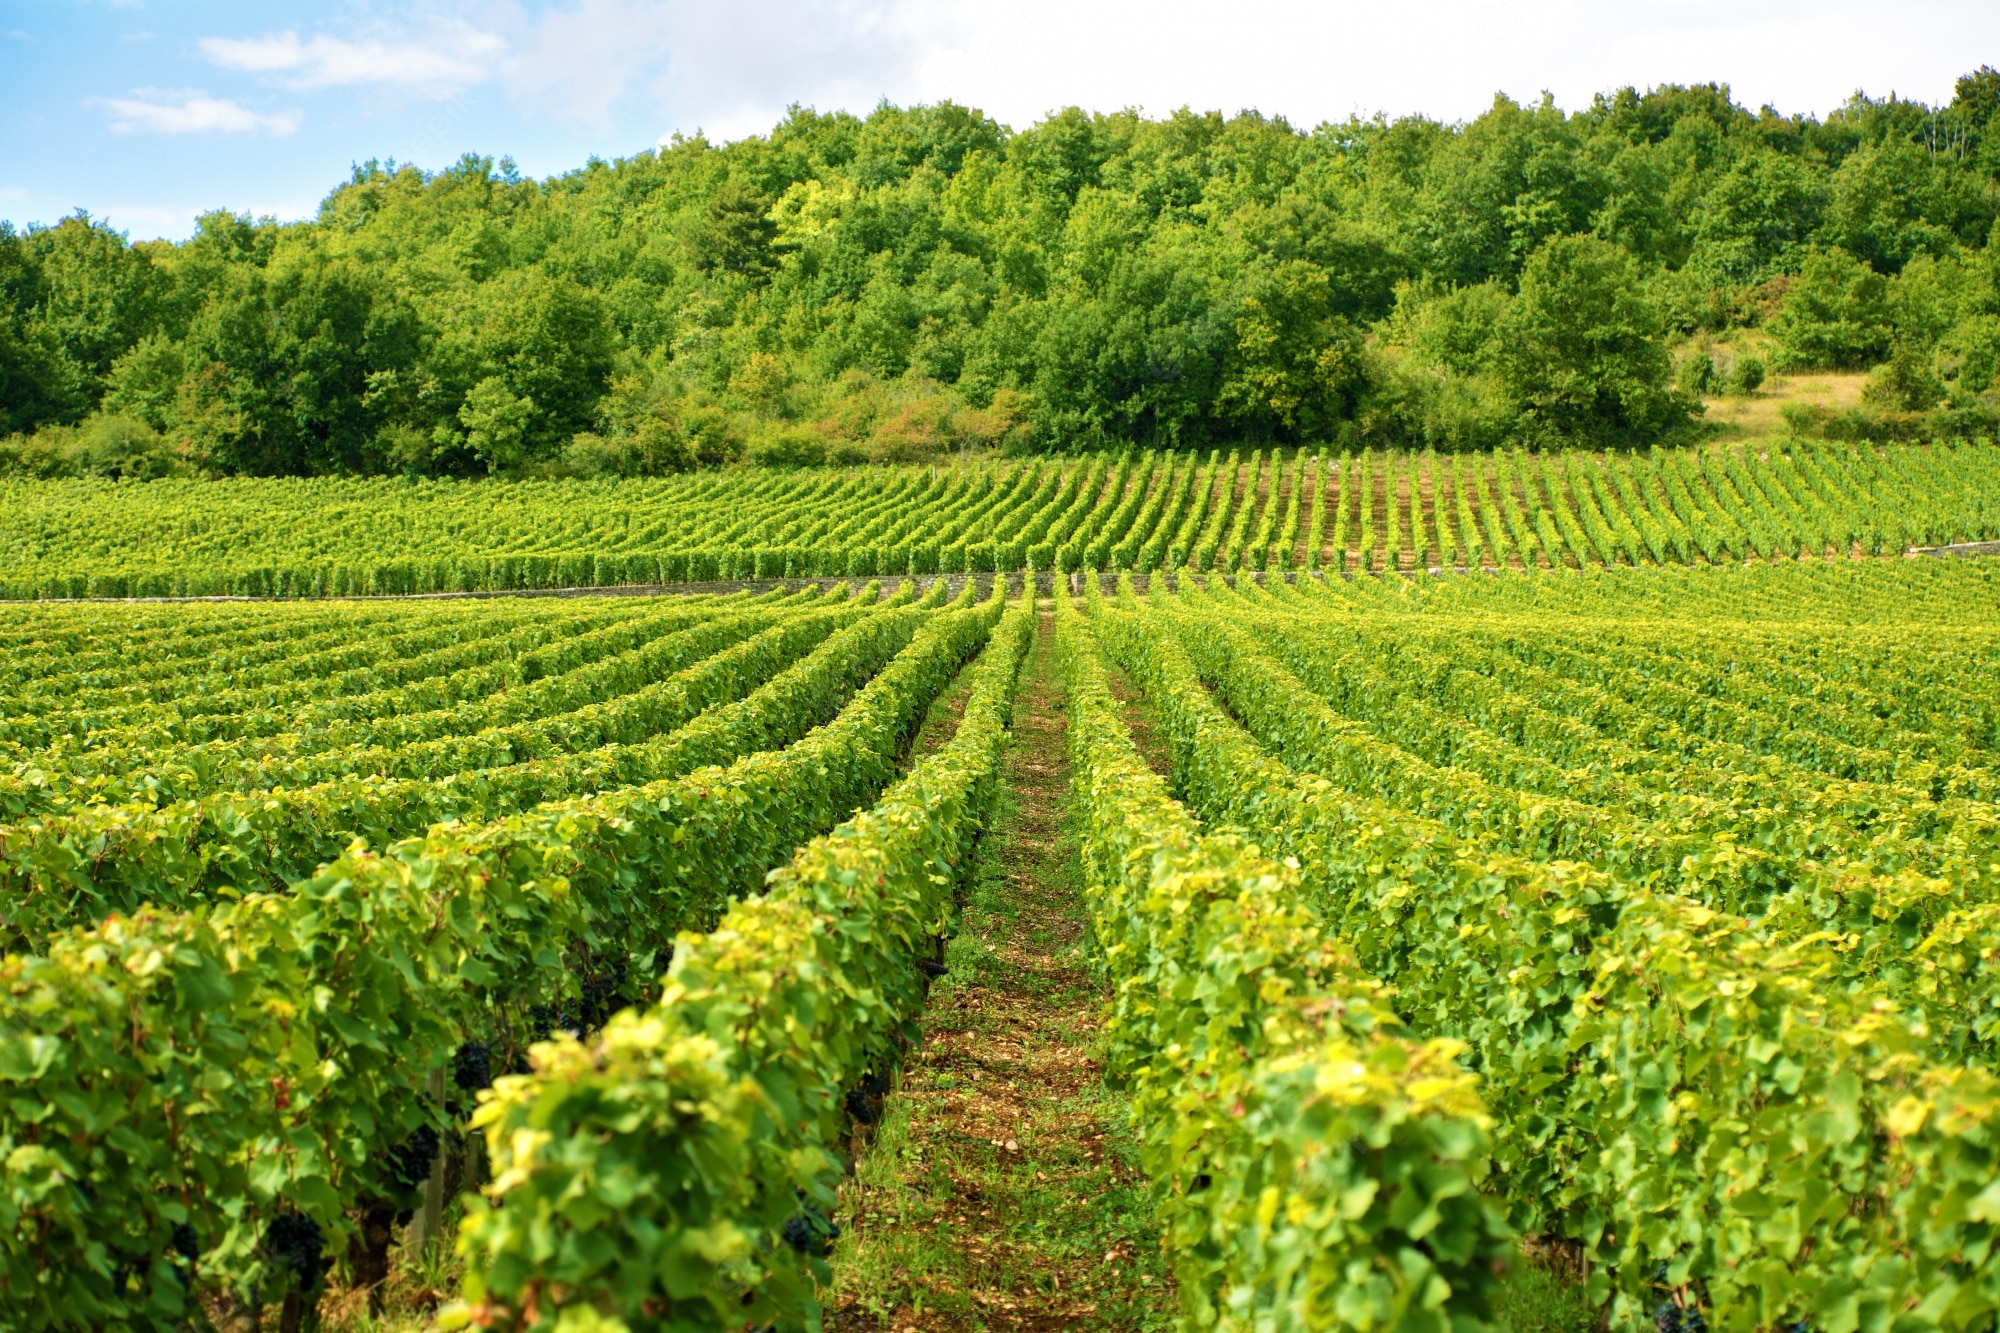 Sostegni alla promozione del settore vinicolo sui mercati internazionali. E’ uscito il bando regionale per la presentazione dei progetti per il 2022/2023